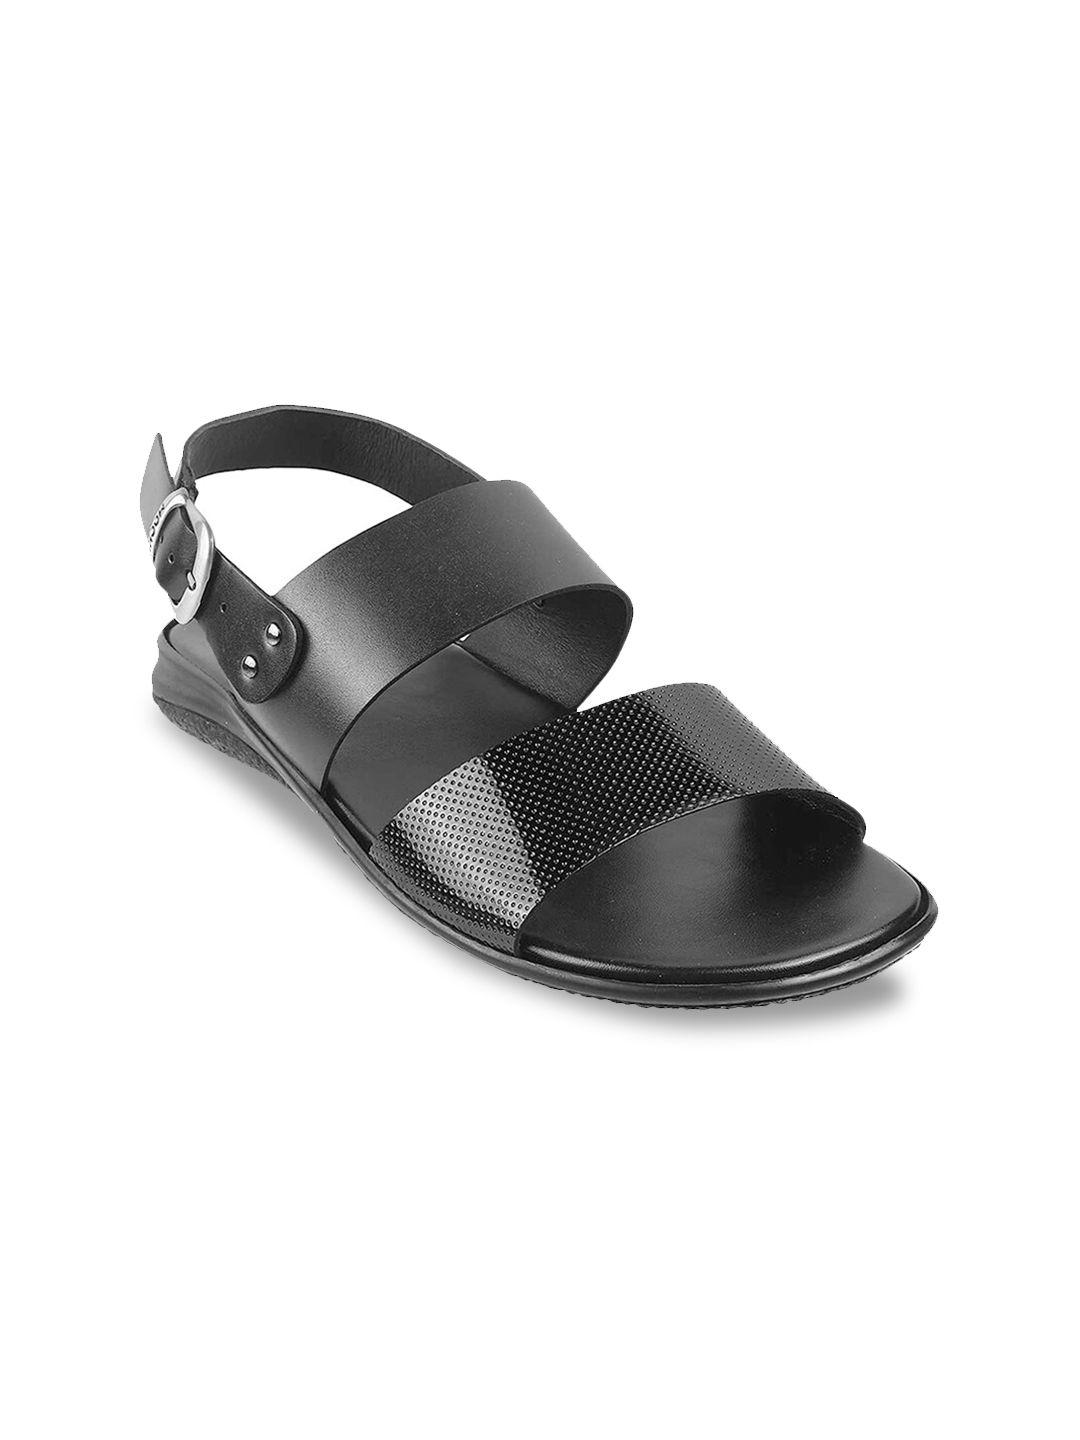 mochi men black comfort sandals